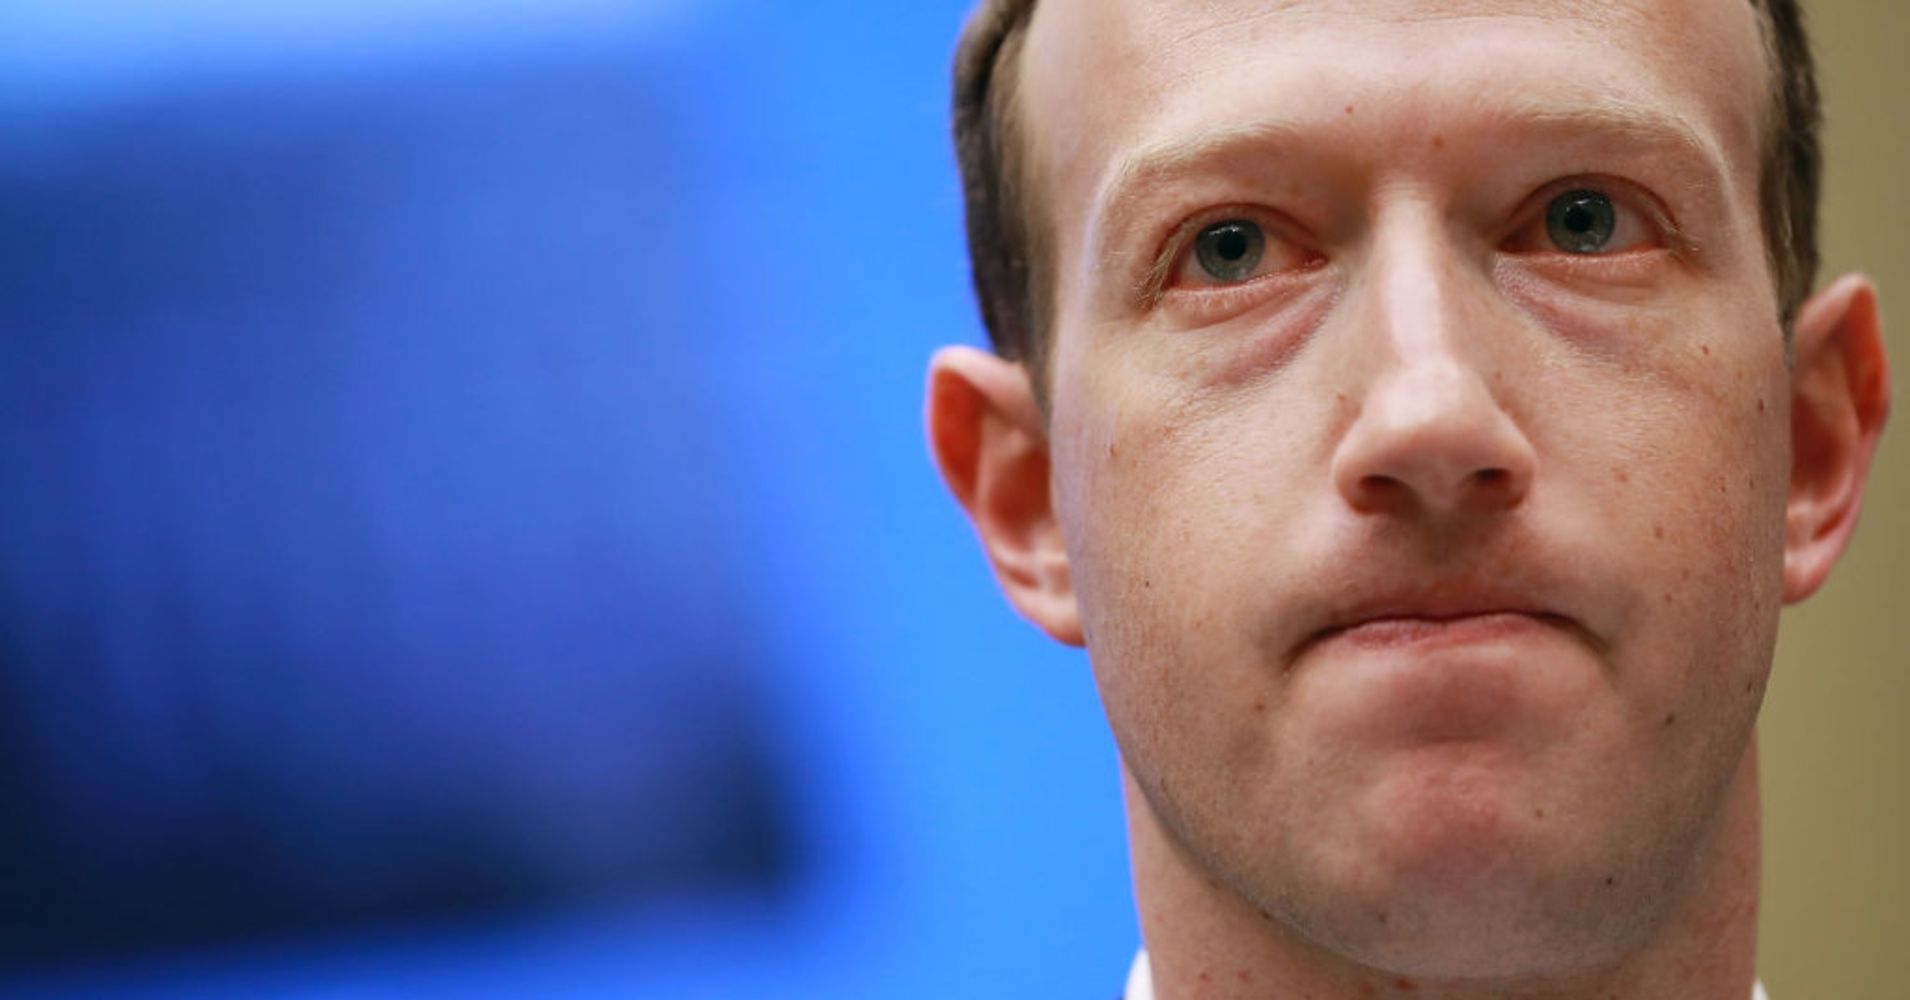 Tài sản giảm gần 20 tỷ USD, Mark Zuckerberg là kẻ thua cuộc nhất năm 2018? - 1